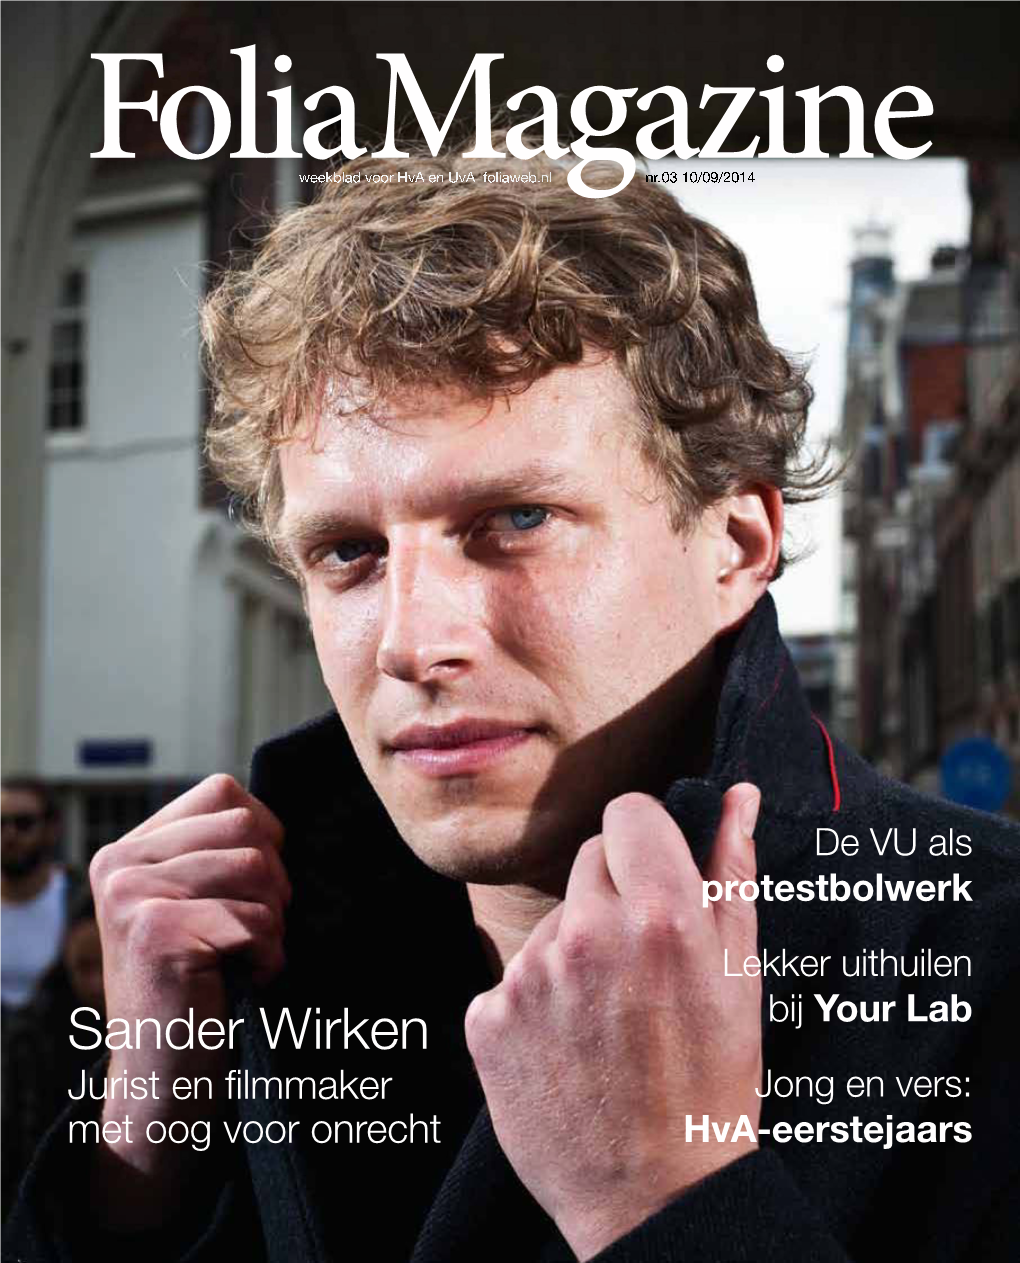 Sander Wirken Bijyour Lab Jurist En Filmmaker Jong En Vers: Met Oog Voor Onrecht Hva-Eerstejaars (Advertentie) FLOOR